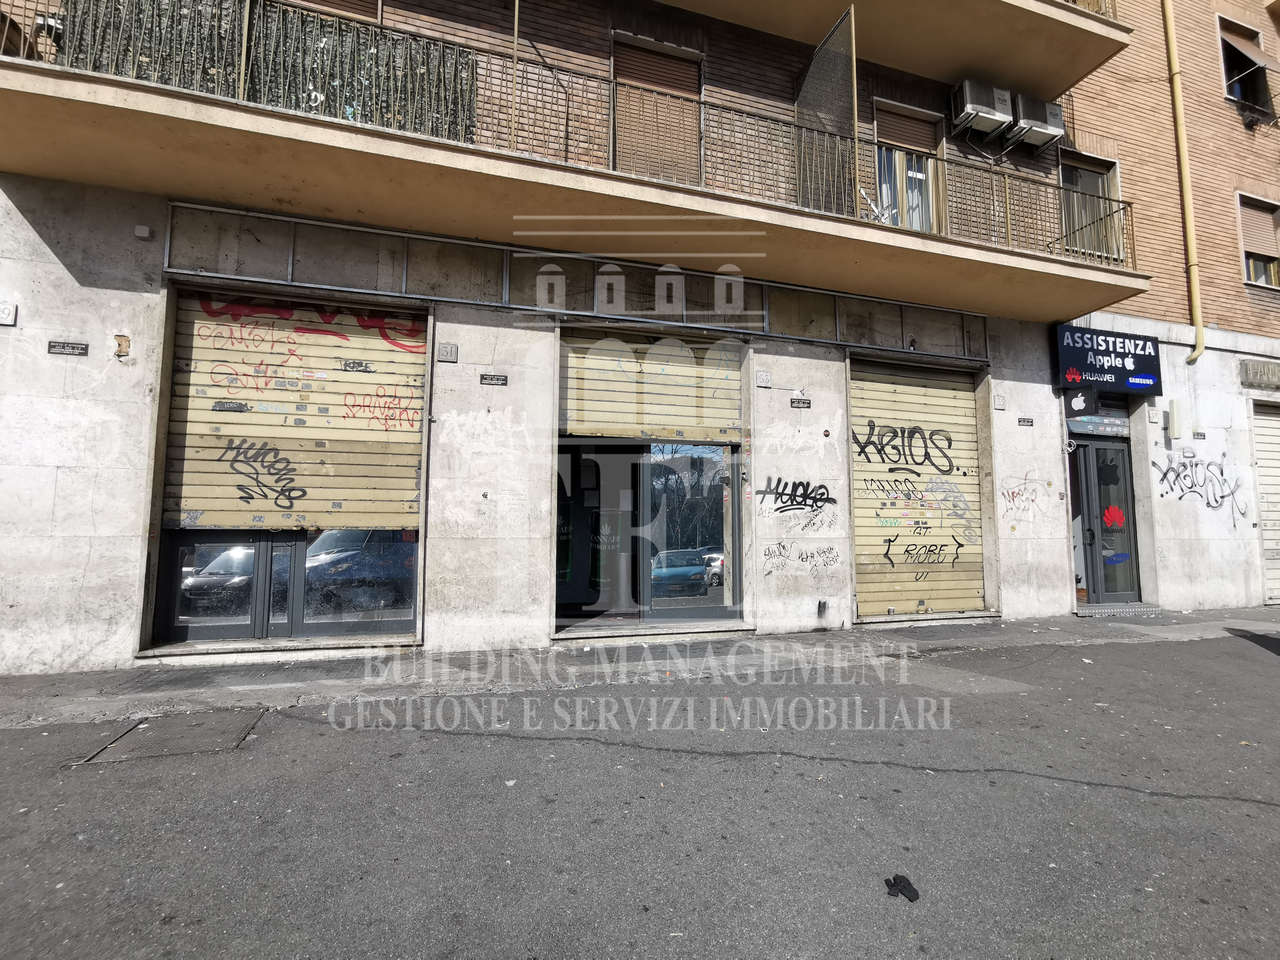 Locale commerciale in affitto in via nomentana nuova 100, Roma